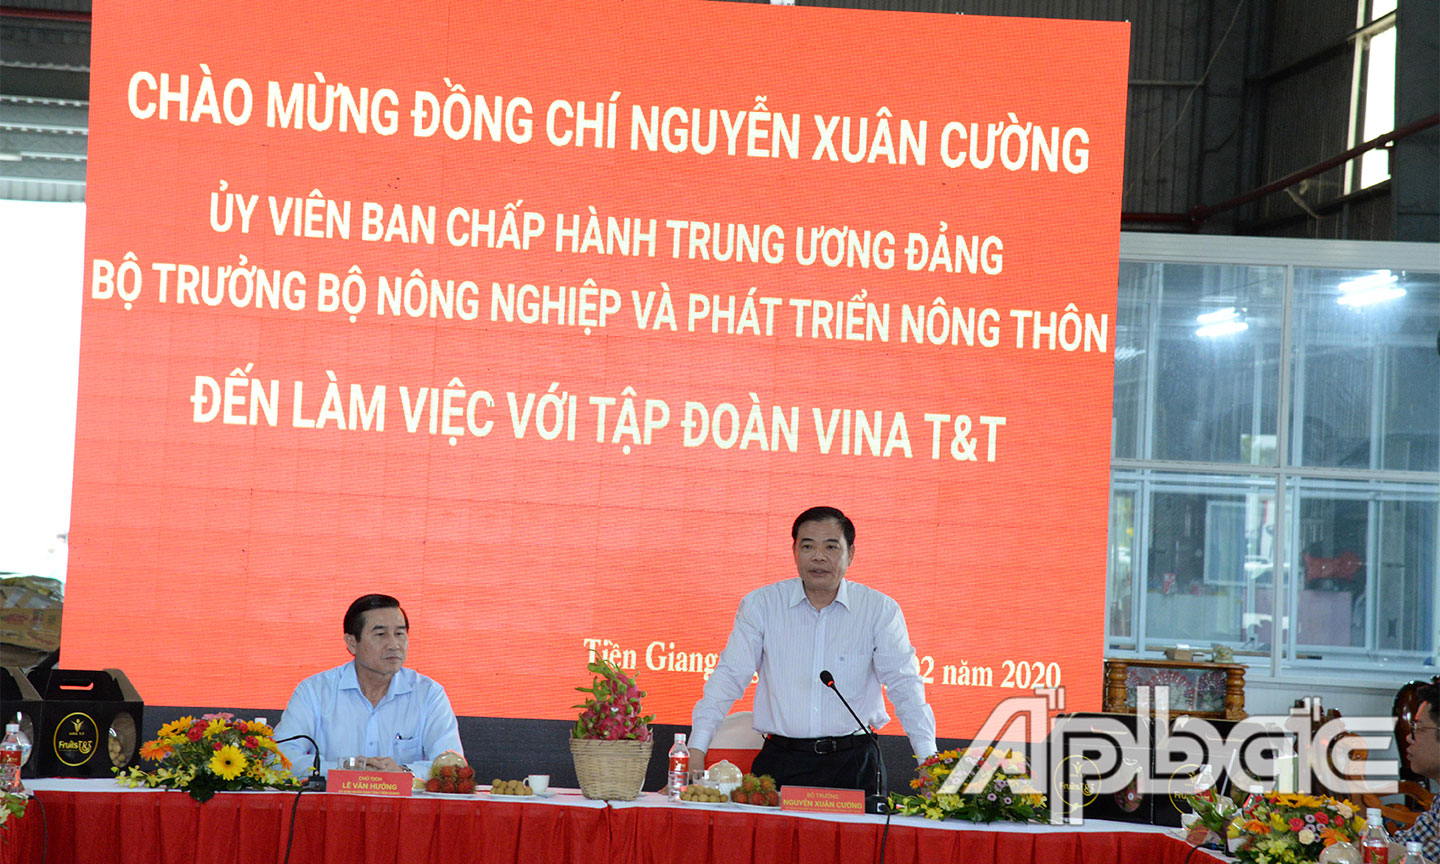 Bộ trưởng Nguyễn Xuân Cường phát biểu tại buổi khảo sát.